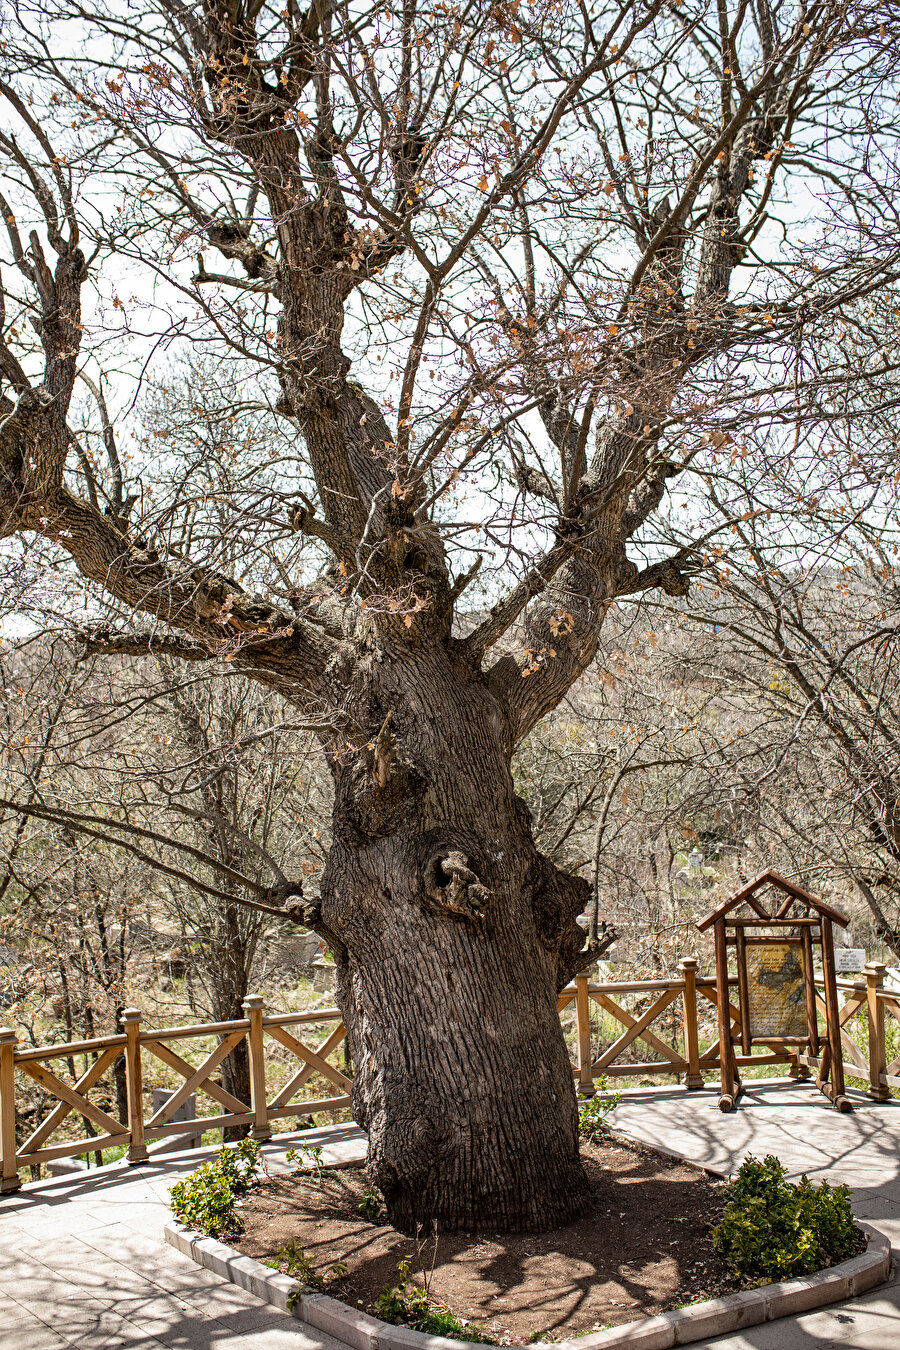 Ağaçlara anıtsal nitelik kazandıran özelliklerin başında fiziksel boyutlar ve görsel ayrıcalıklar gelir.